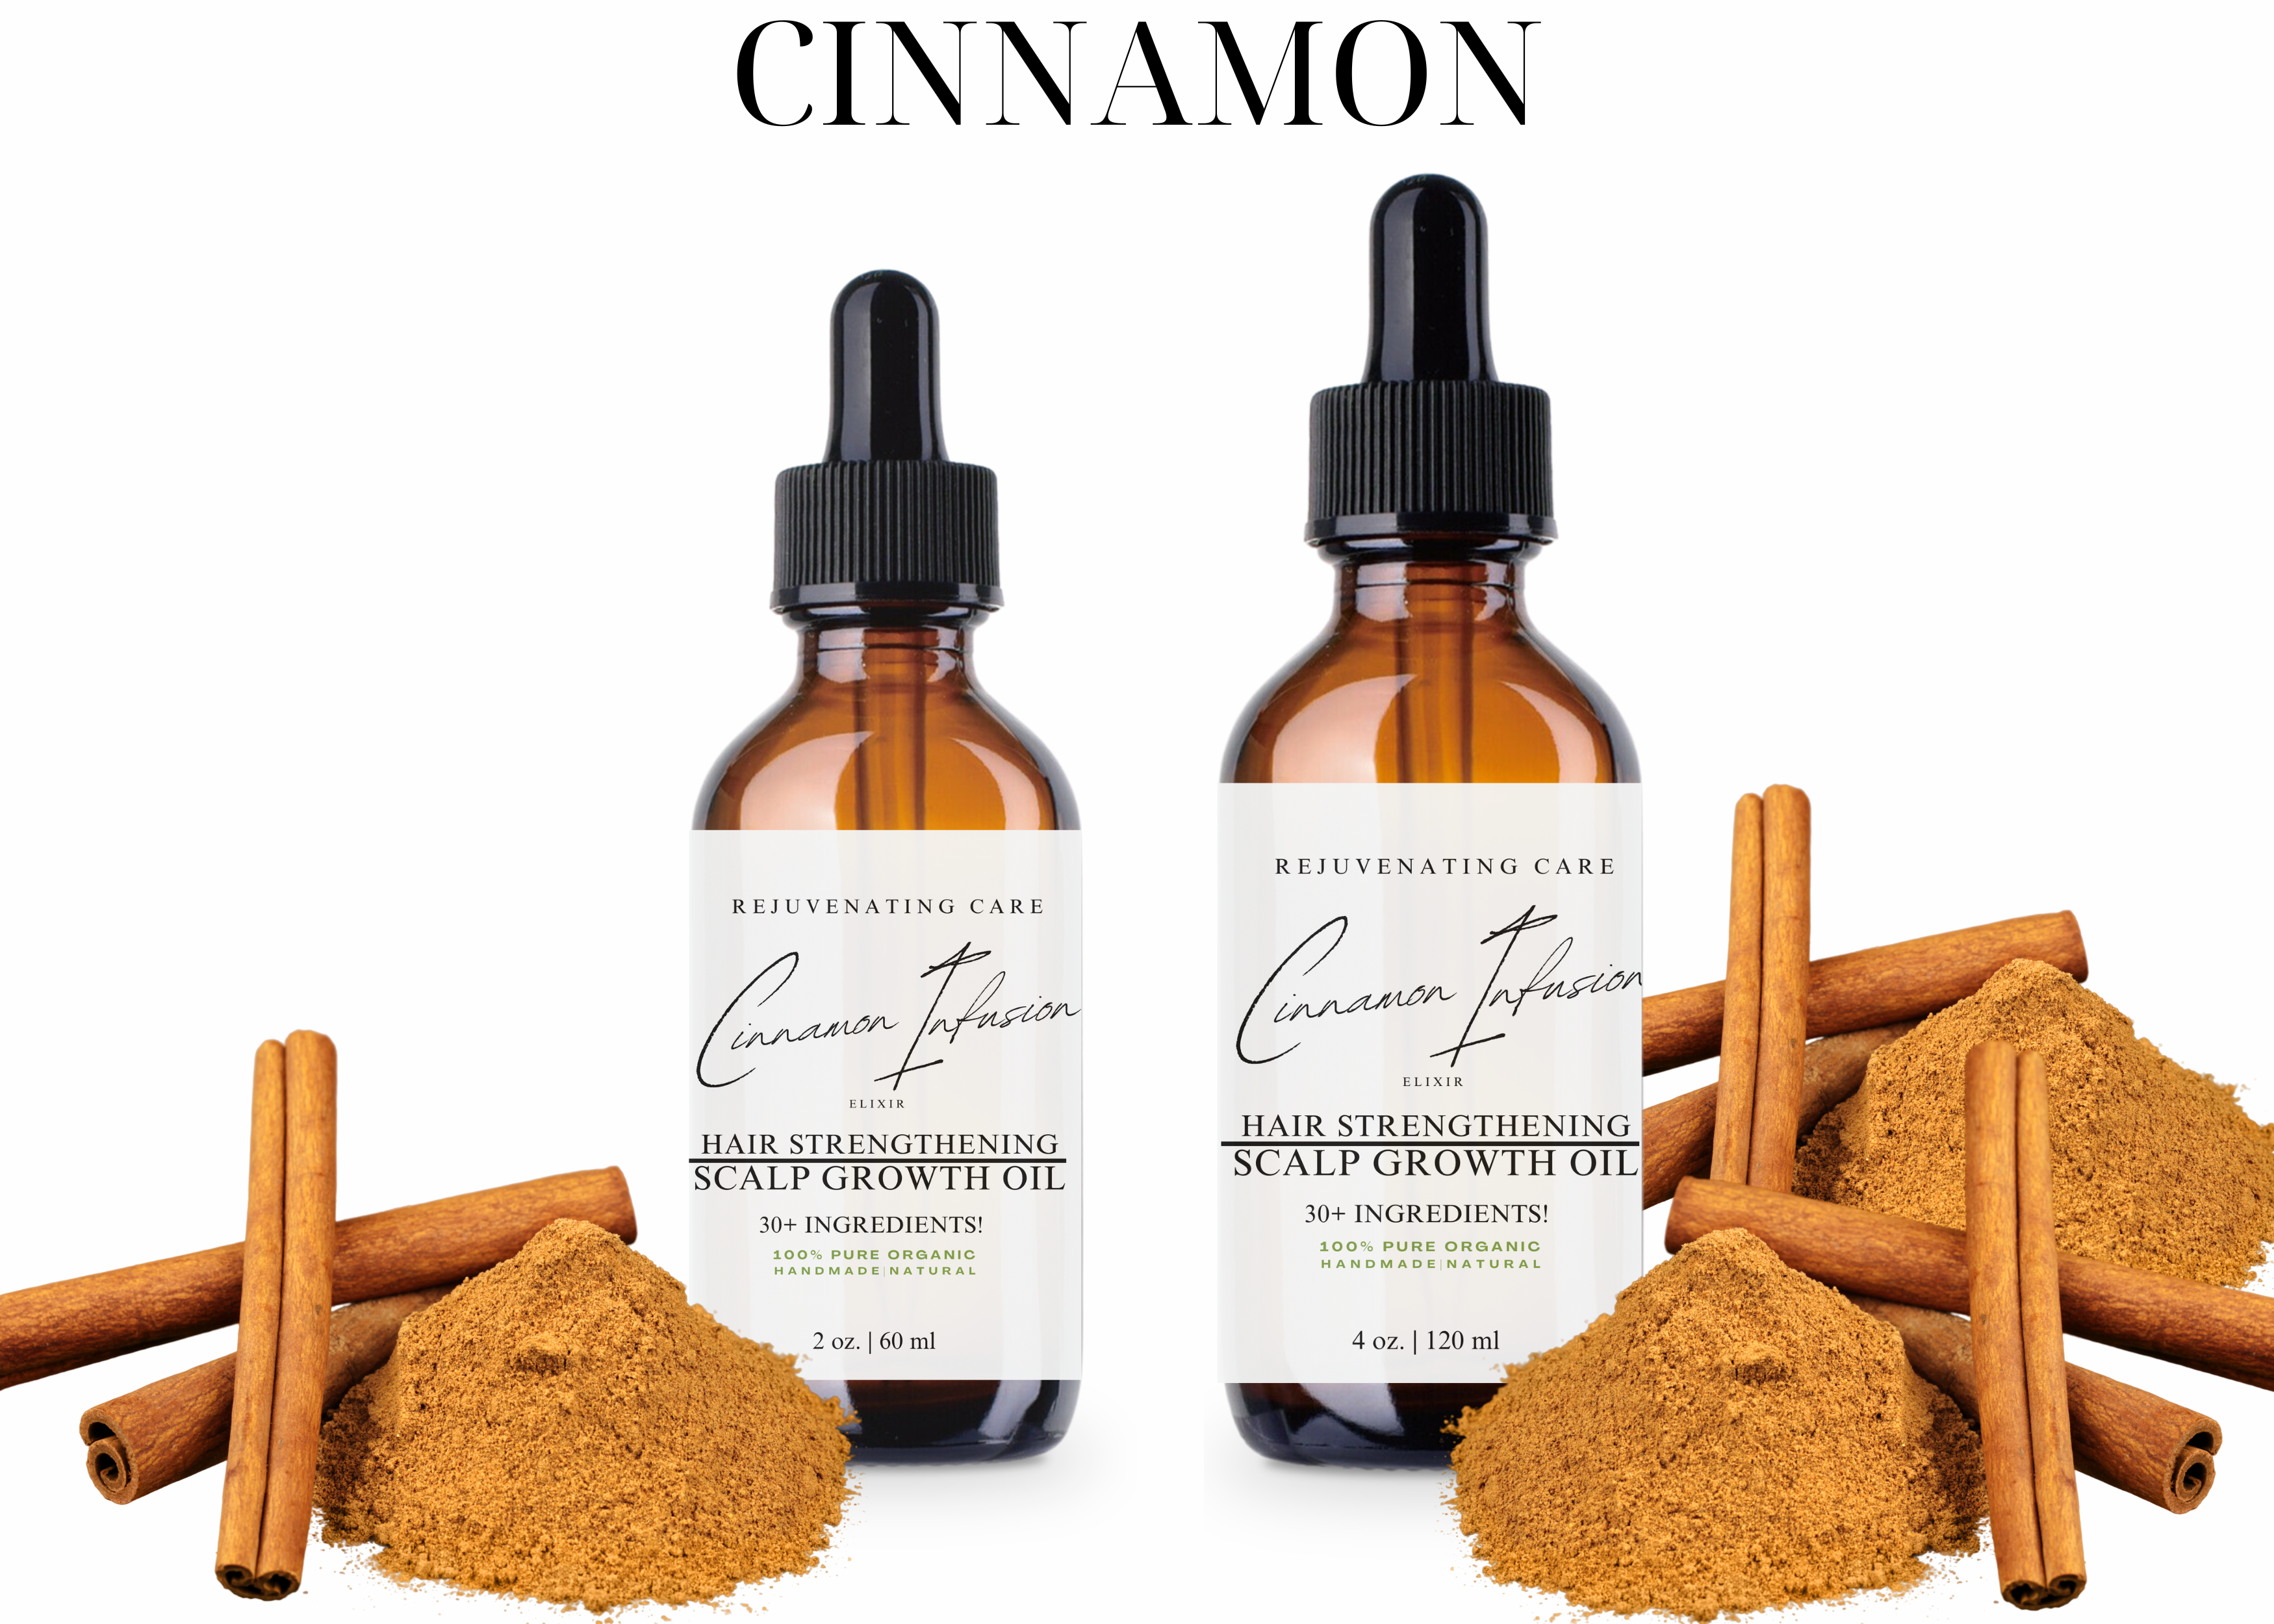 Cinnamon Hair Strengthening and Scalp Growth Oil 4oz